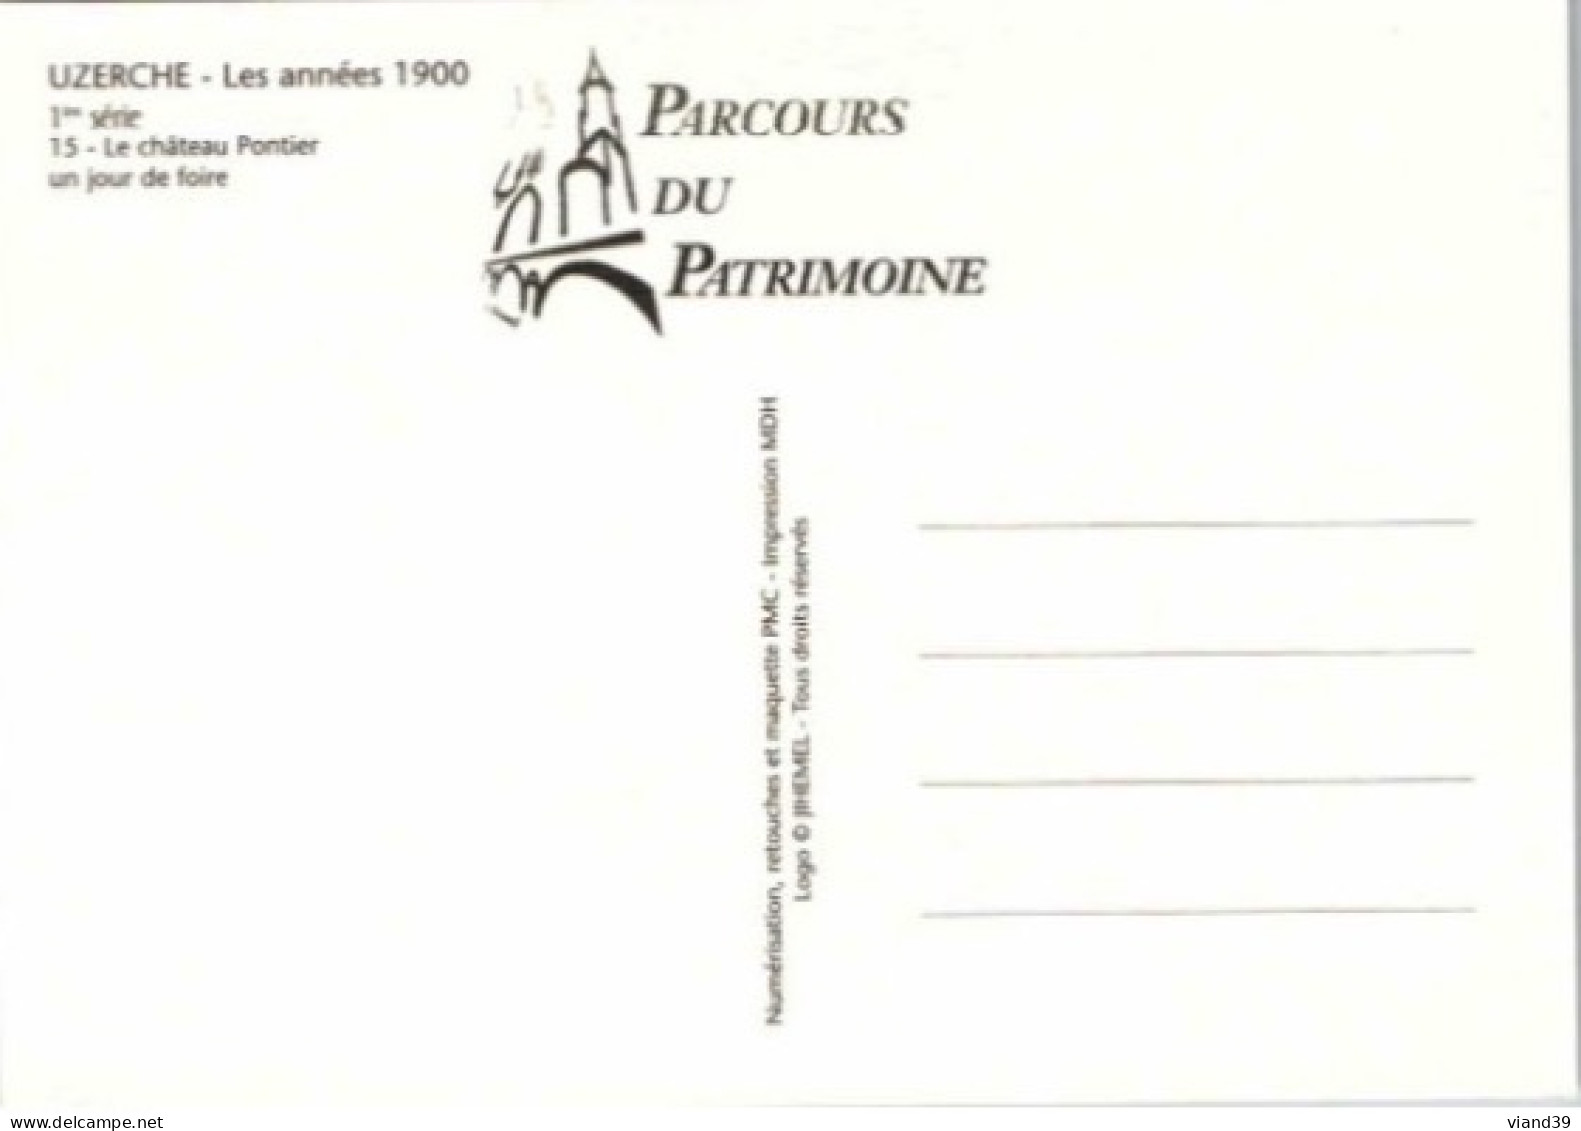 UZERCHE - Les Années 1900 -  Château Pontier. , Un Jour De Foire.   -   Collection Parcours Du Patrimoine - Uzerche